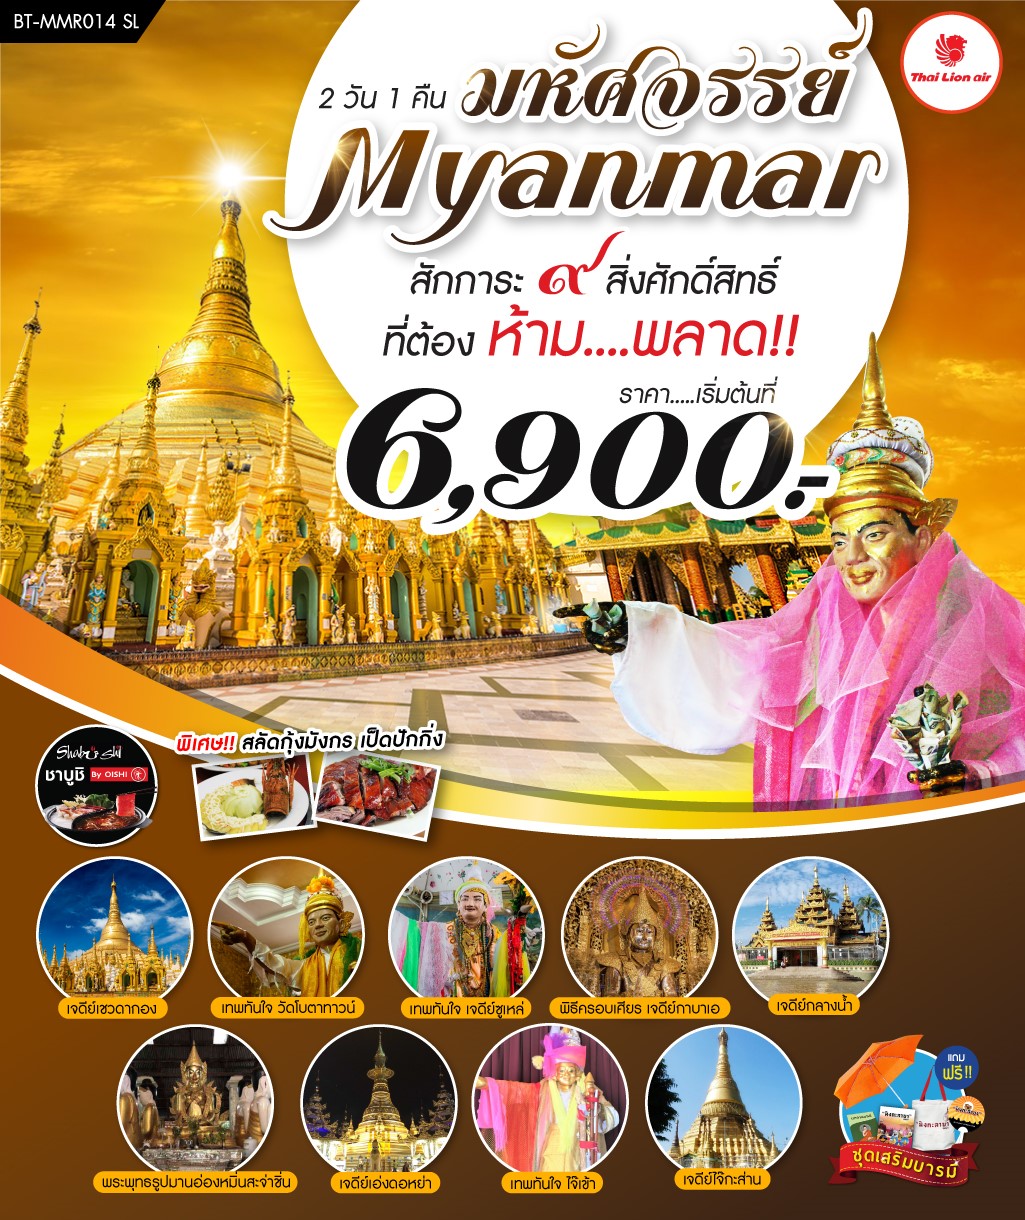 ทัวร์พม่า มหัศจรรย์ Myanmar สักการะ 9 สิ่งศักดิ์สิทธิ์ 2D1N (AUG-SEP19)(BT-MMR014_SL)